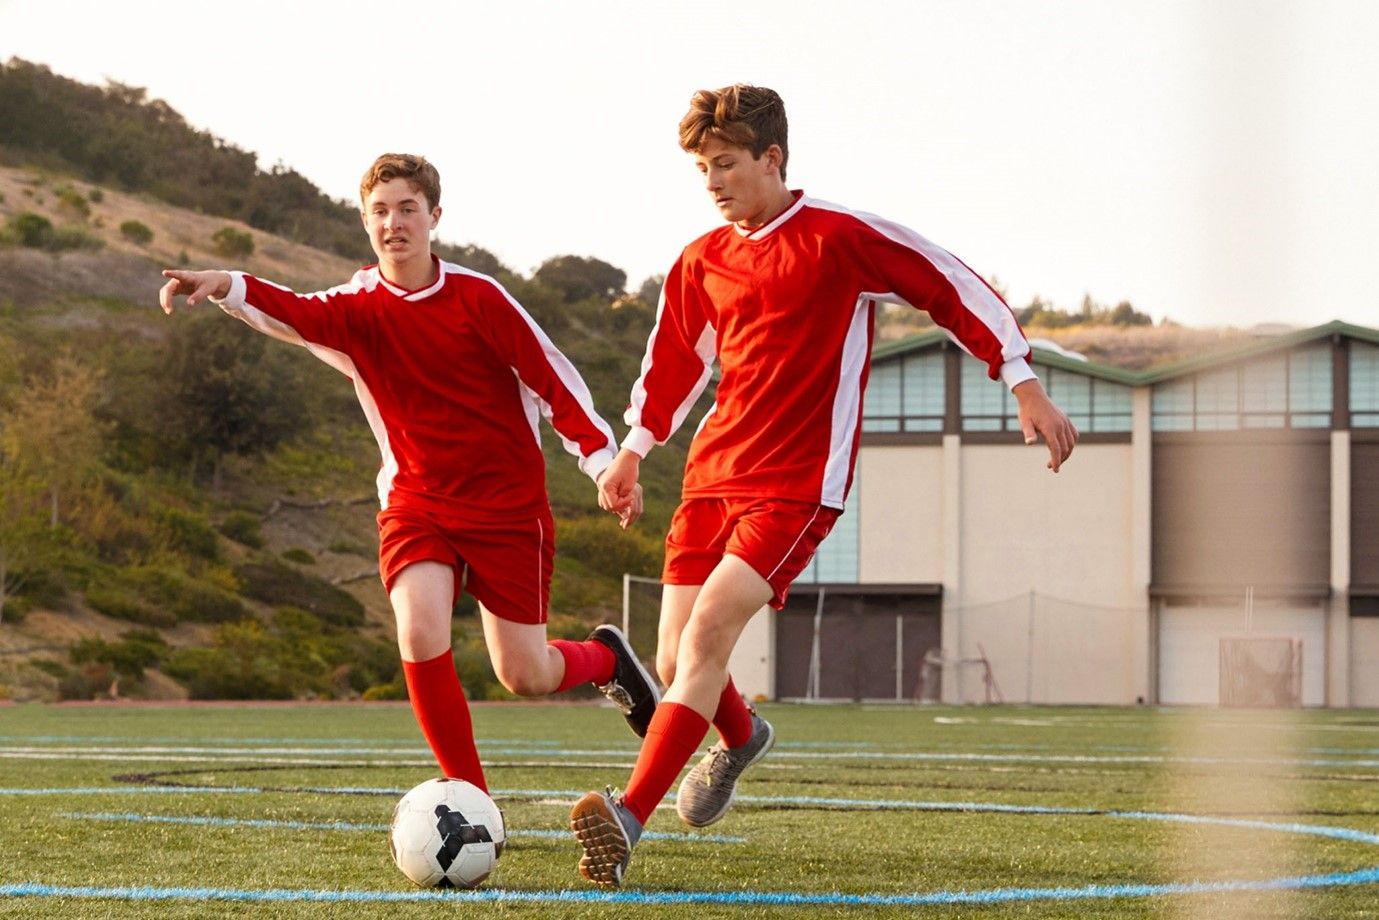 dwaj chłopcy trenują piłkę nożną na boisku szkolnym